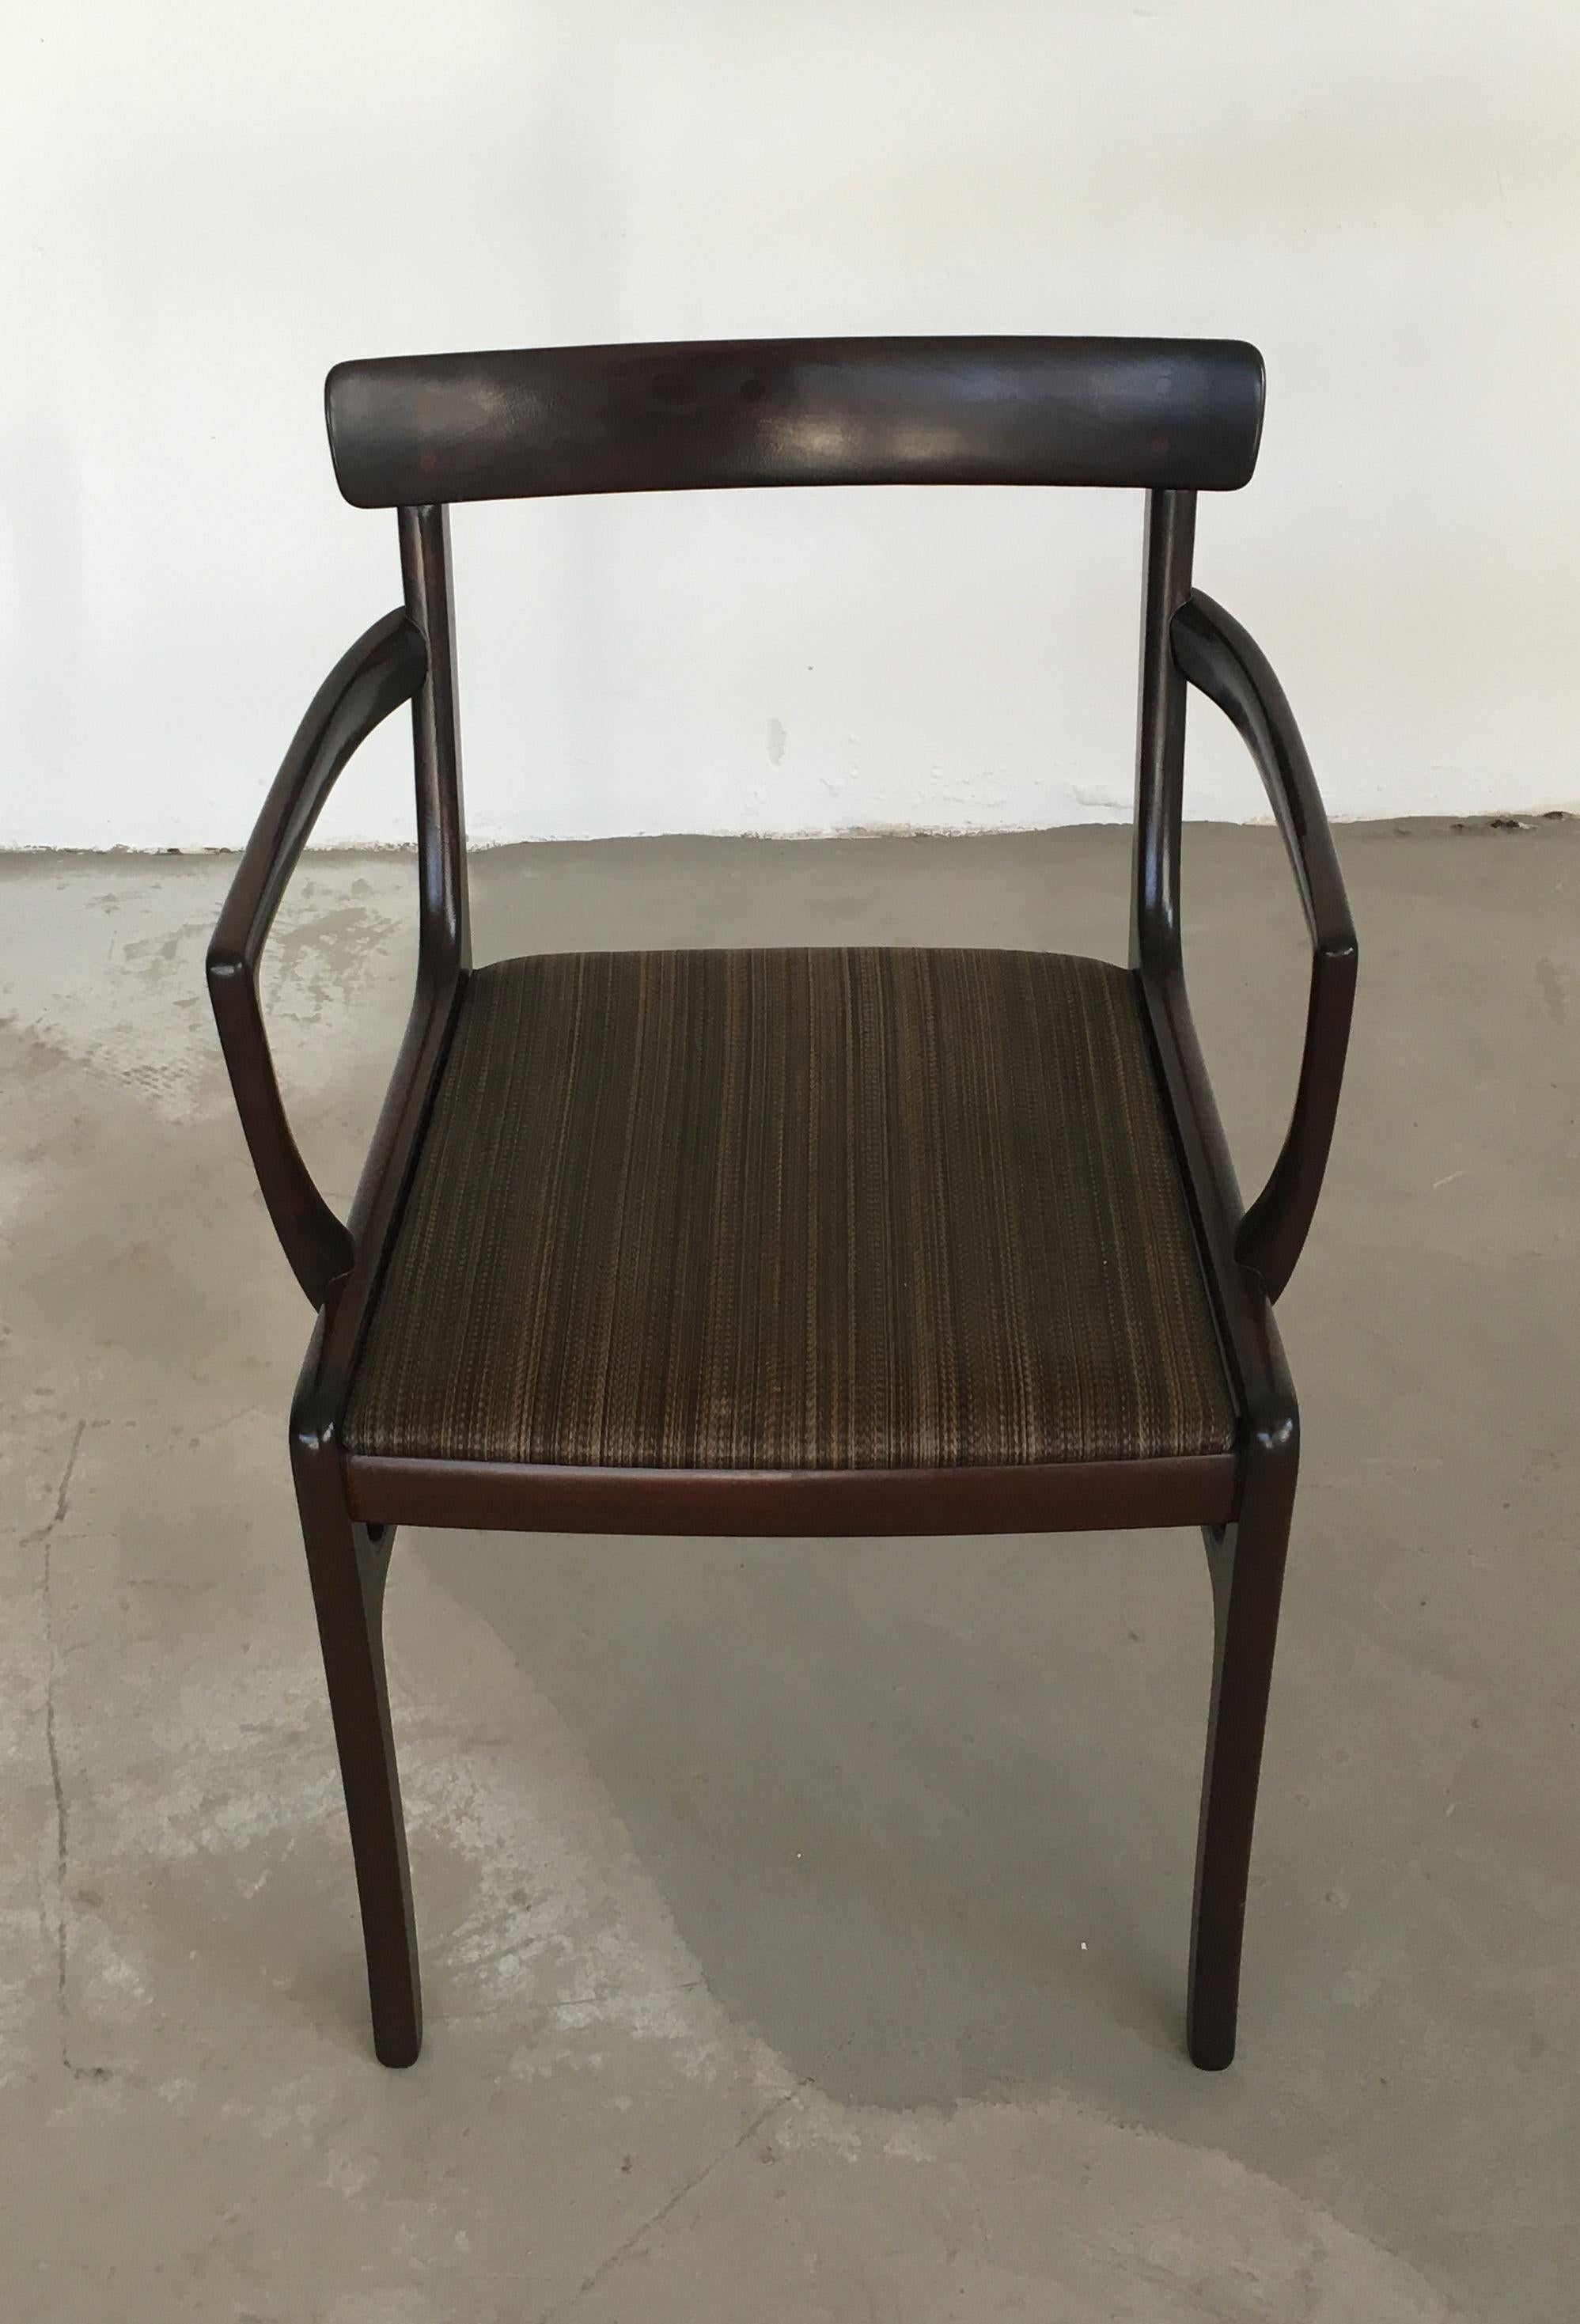 Ce fauteuil Rungstedlund conçu par Ole Wanscher a été produit dans les années 1960 et 1970 par Poul Jeppesen Furniture. 

Le fauteuil fait partie de la série de meubles de salle à manger Rungstedlund conçue par Ole Wanscher et nommée d'après le